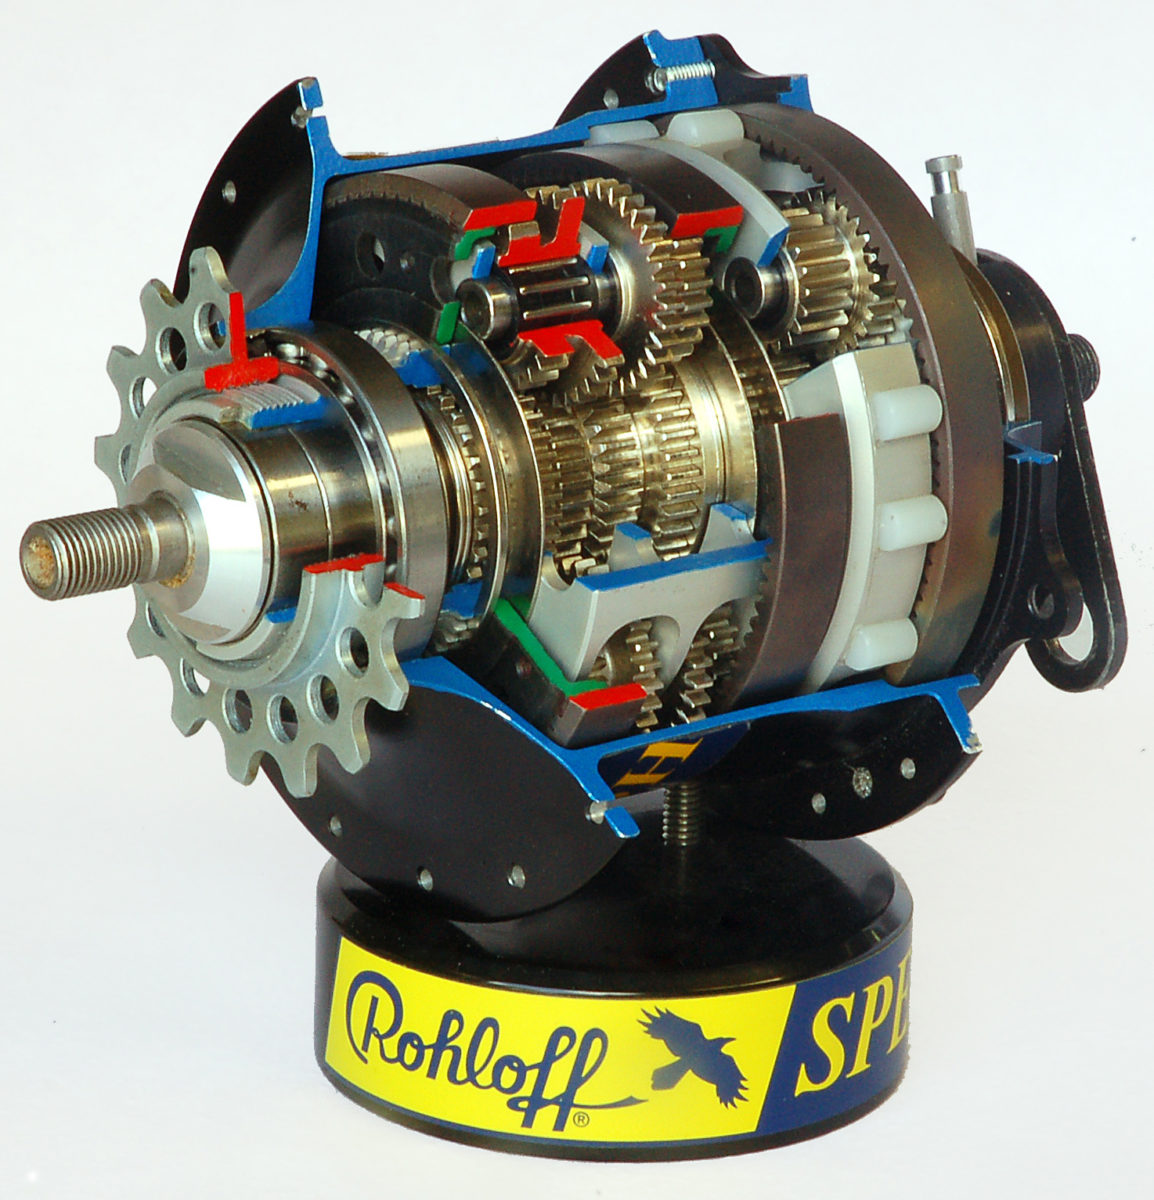 Rohloff-speedhub-500-14-by-RalfR-05